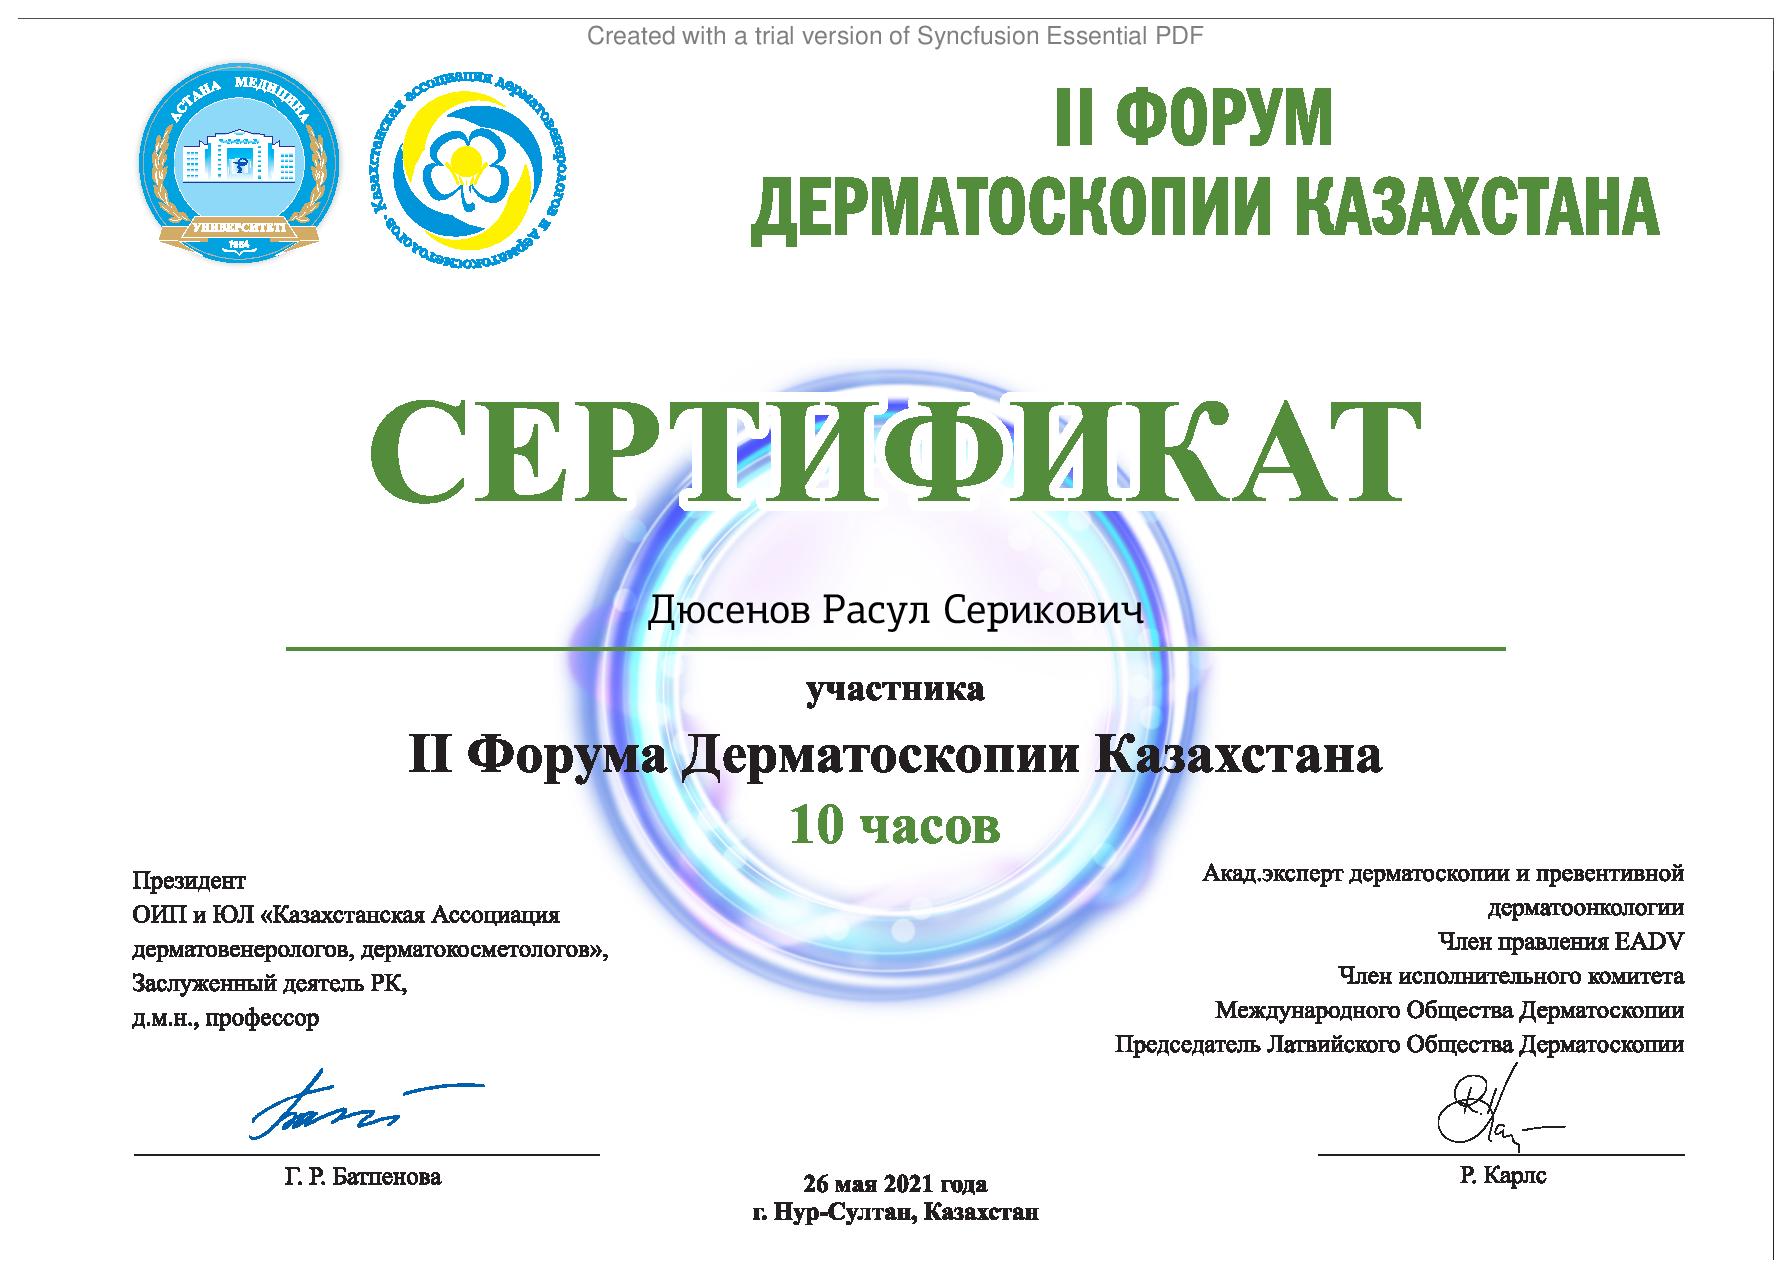 Сертификат участника форума дерматоскопии Казахстана Расула Дюсенова